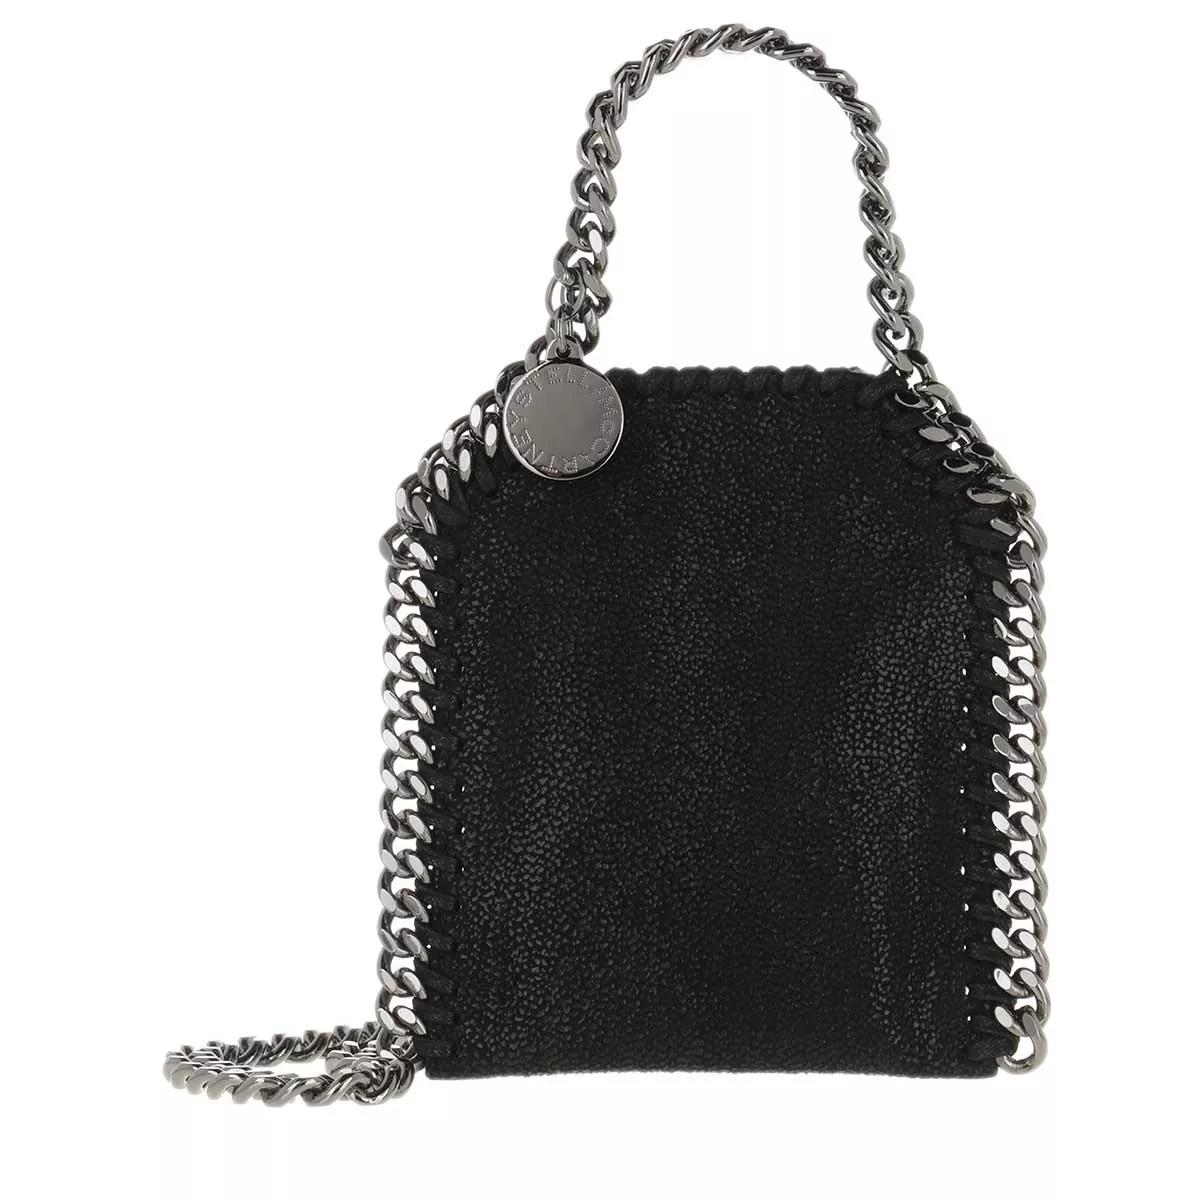 Luxus Damentasche Tasche Stella Kette Bag Chain Leder schwarz